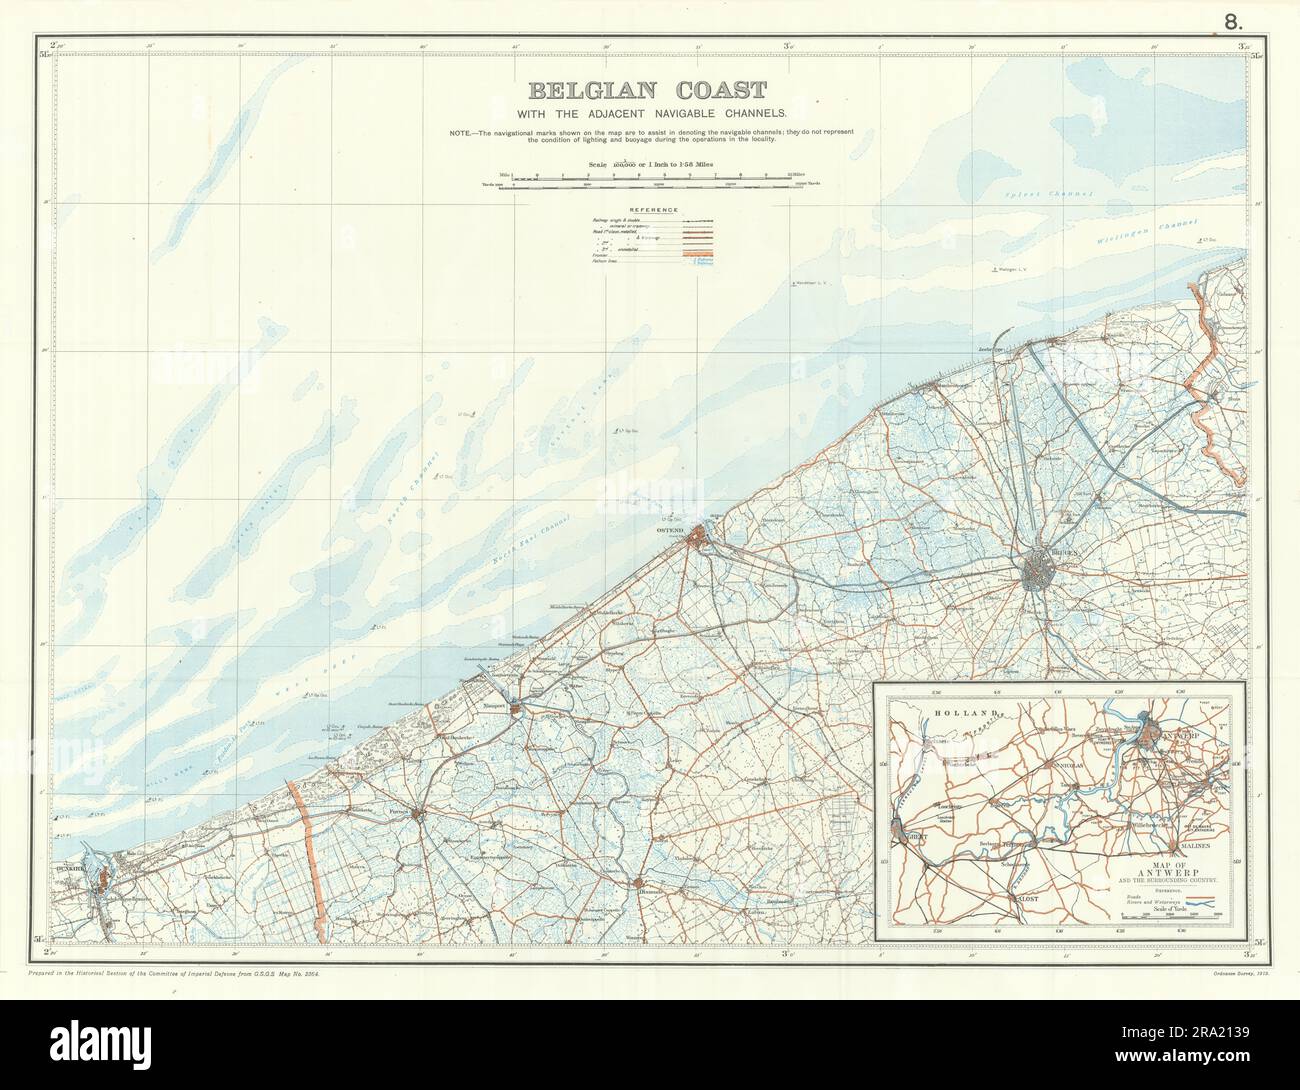 Belgische Küste mit angrenzenden schiffbaren Kanälen 1914. Erster Weltkrieg. 1920-Karte Stockfoto